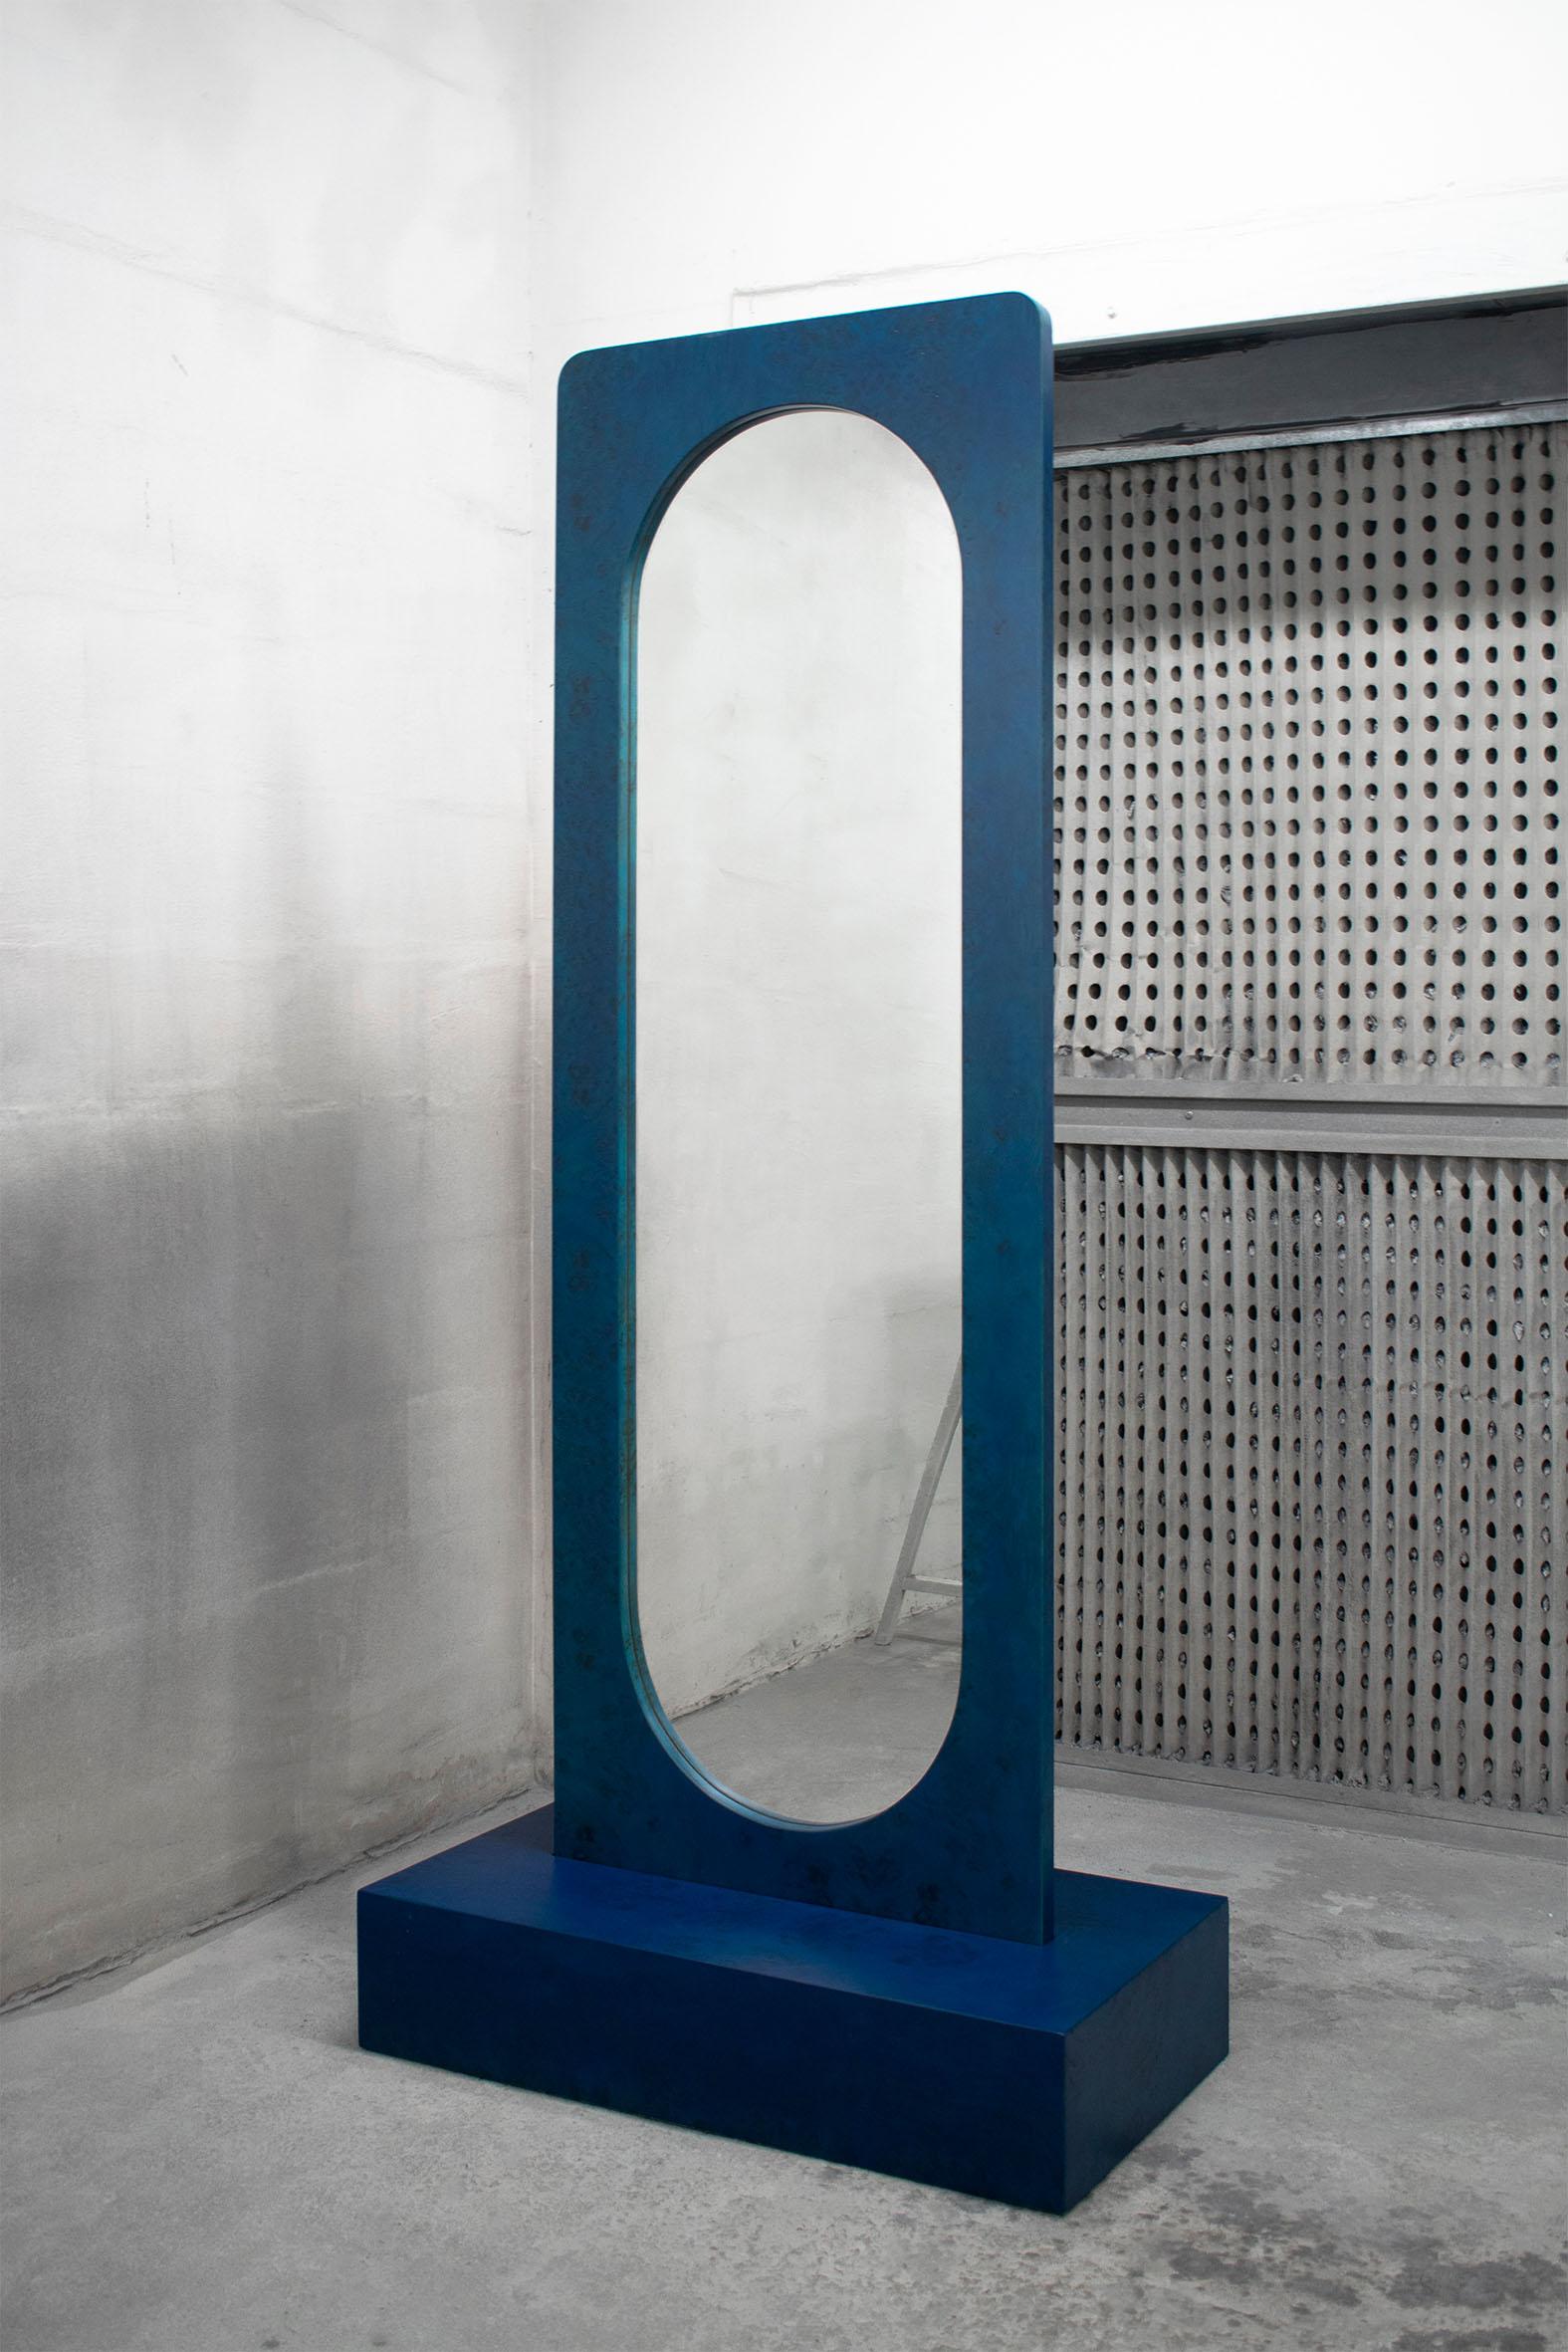 Miroir sur pied bleu par Studio Christinekalia
Dimensions : L 50 x P 90 x H 200 cm
MATERIAL : Miroir, bois, placage de ronce.

Ce meuble miroir agit comme un diffuseur naturel dans l'espace de vie. À la fois emprunt et reflet, le motif est une arche